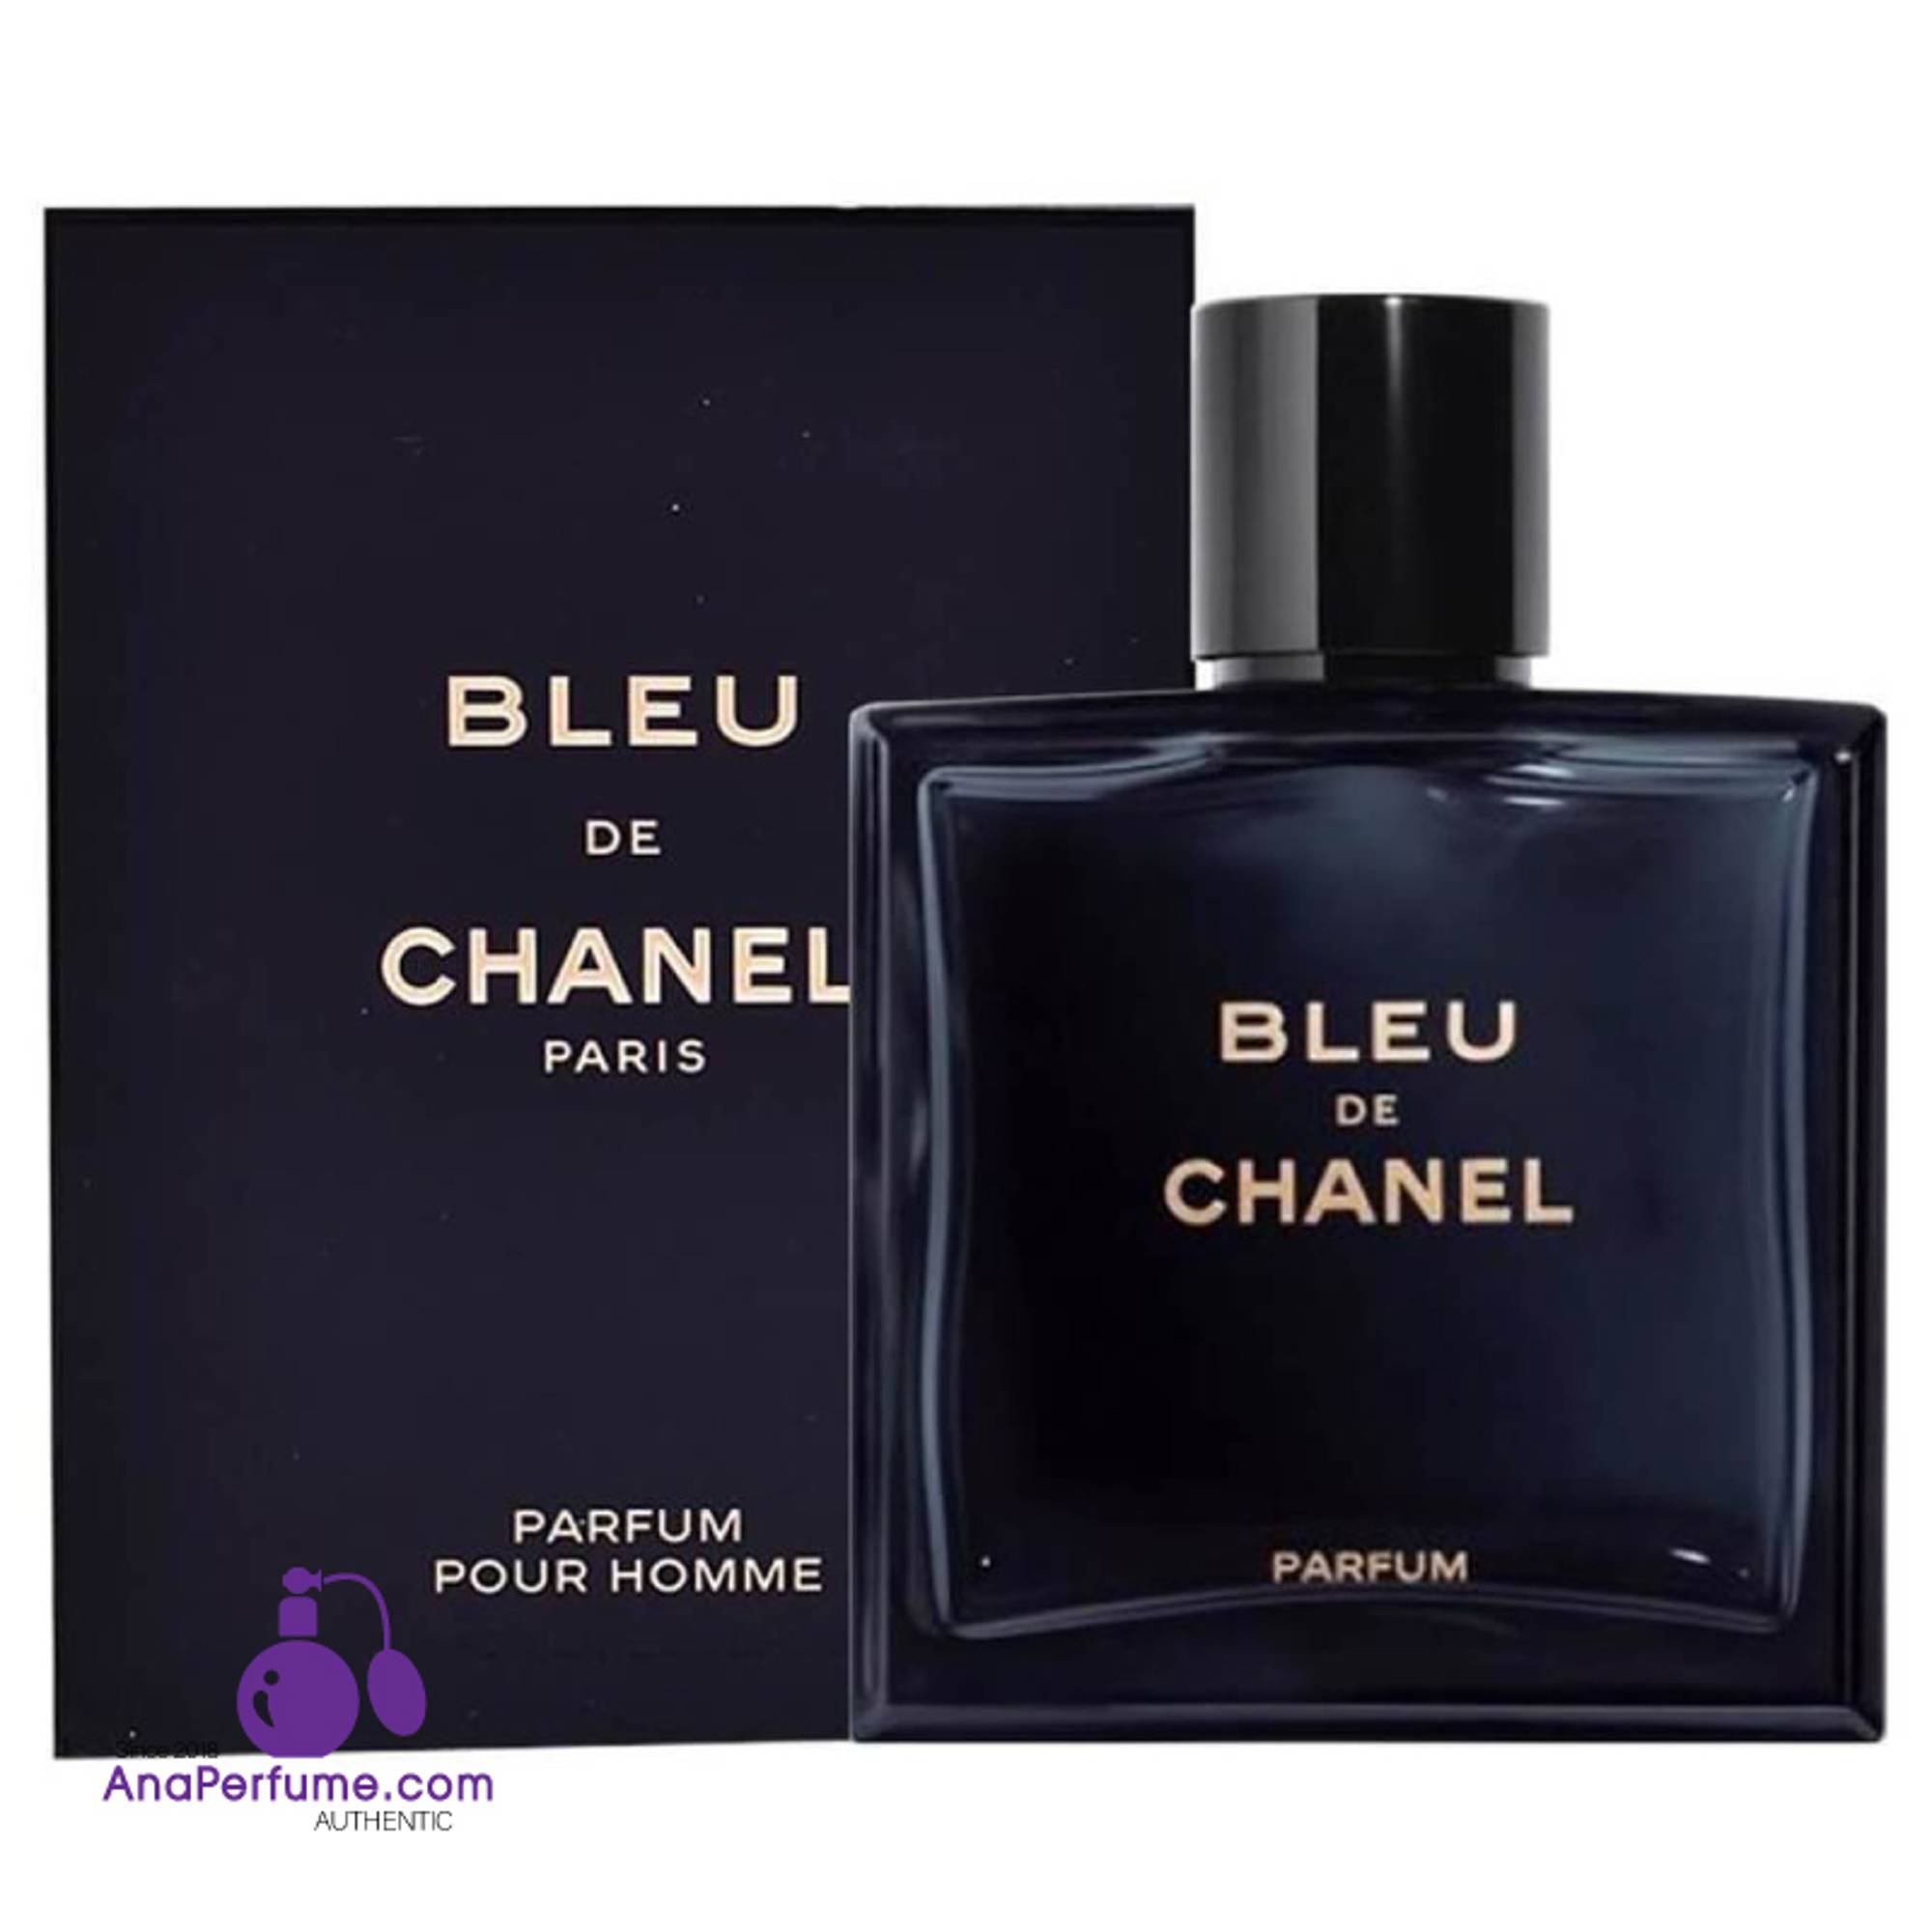 Nước hoa nam Bleu De Chanel Parfum 50ml chính hãng nhập khẩu